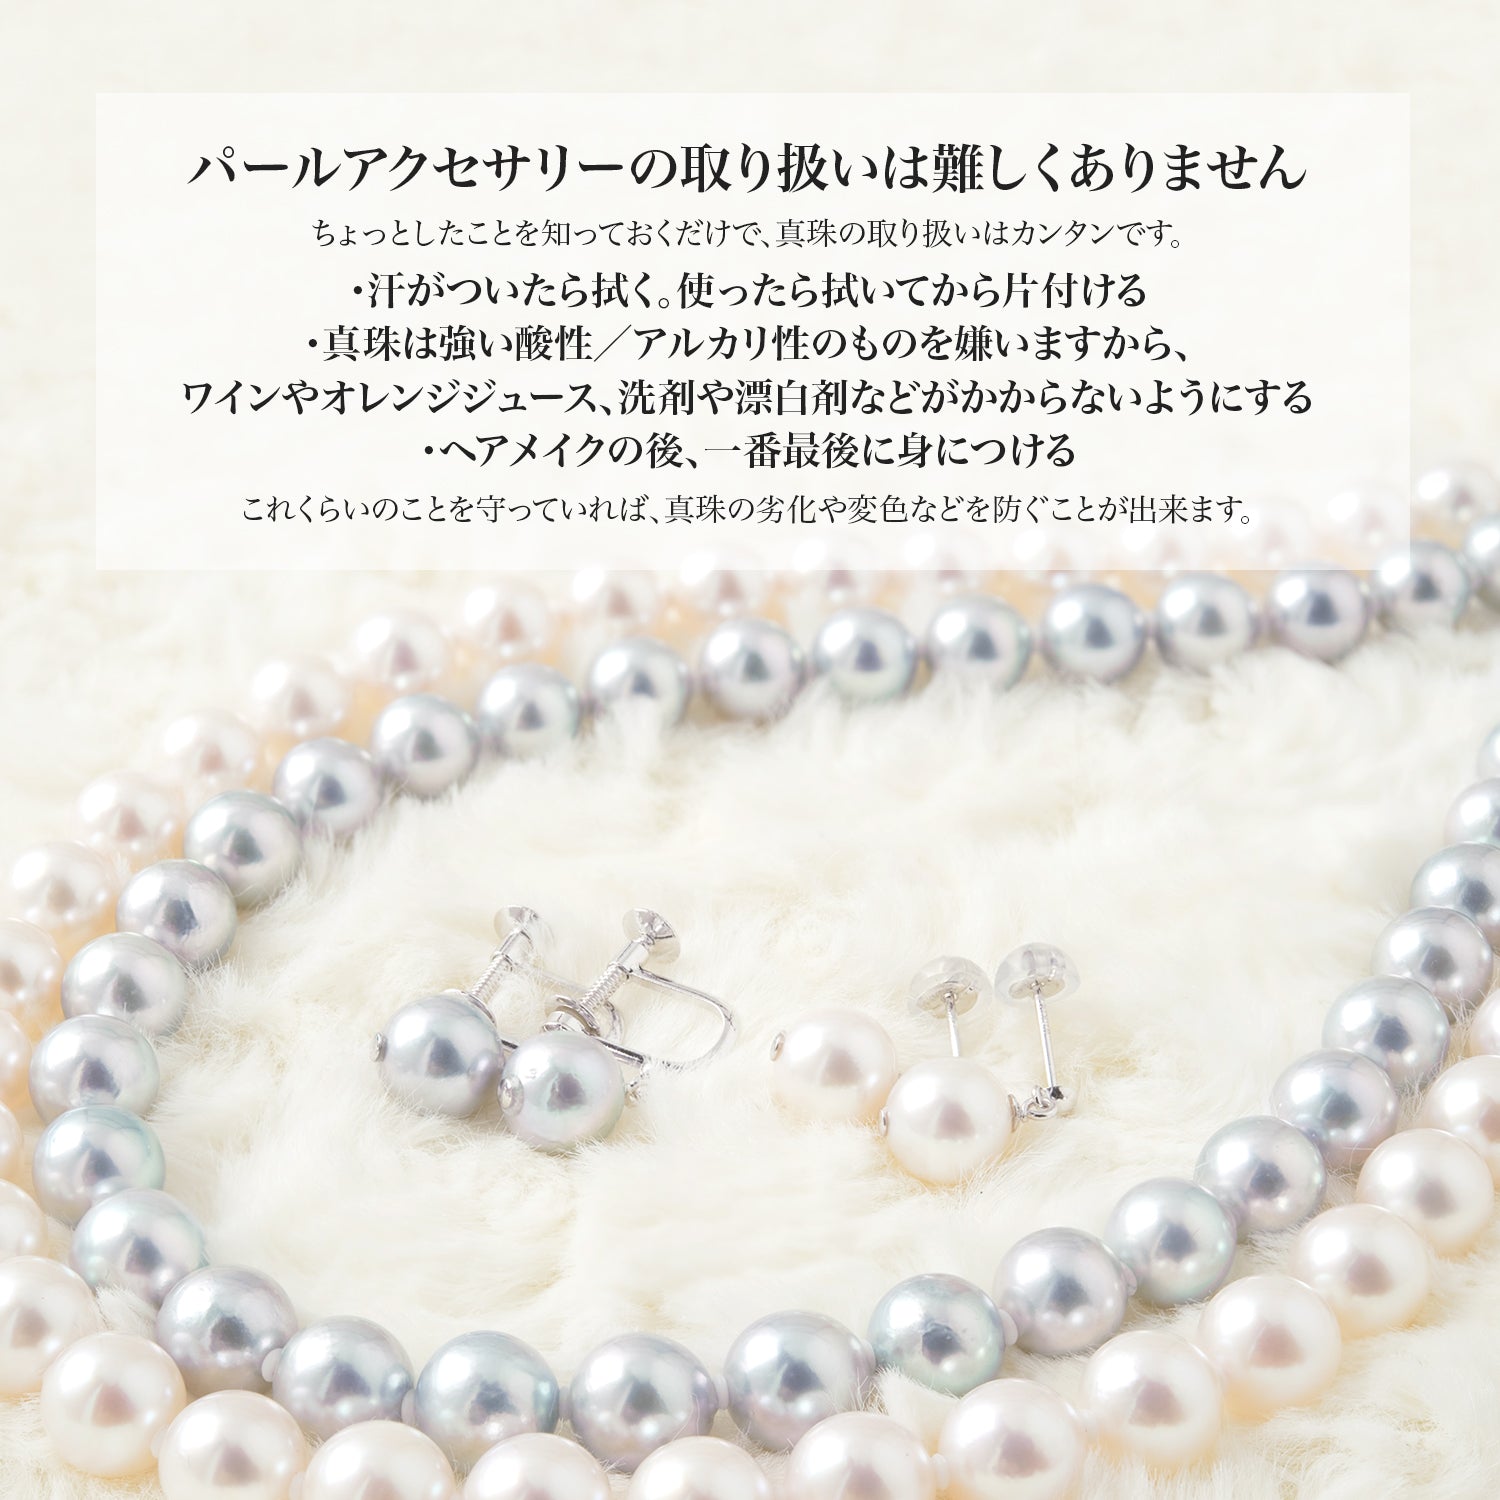 [自然蓝] 无色 Akoya 珍珠壁炉项链 [10-10.5 毫米] 不锈钢男女通用珍珠配件 (3984)